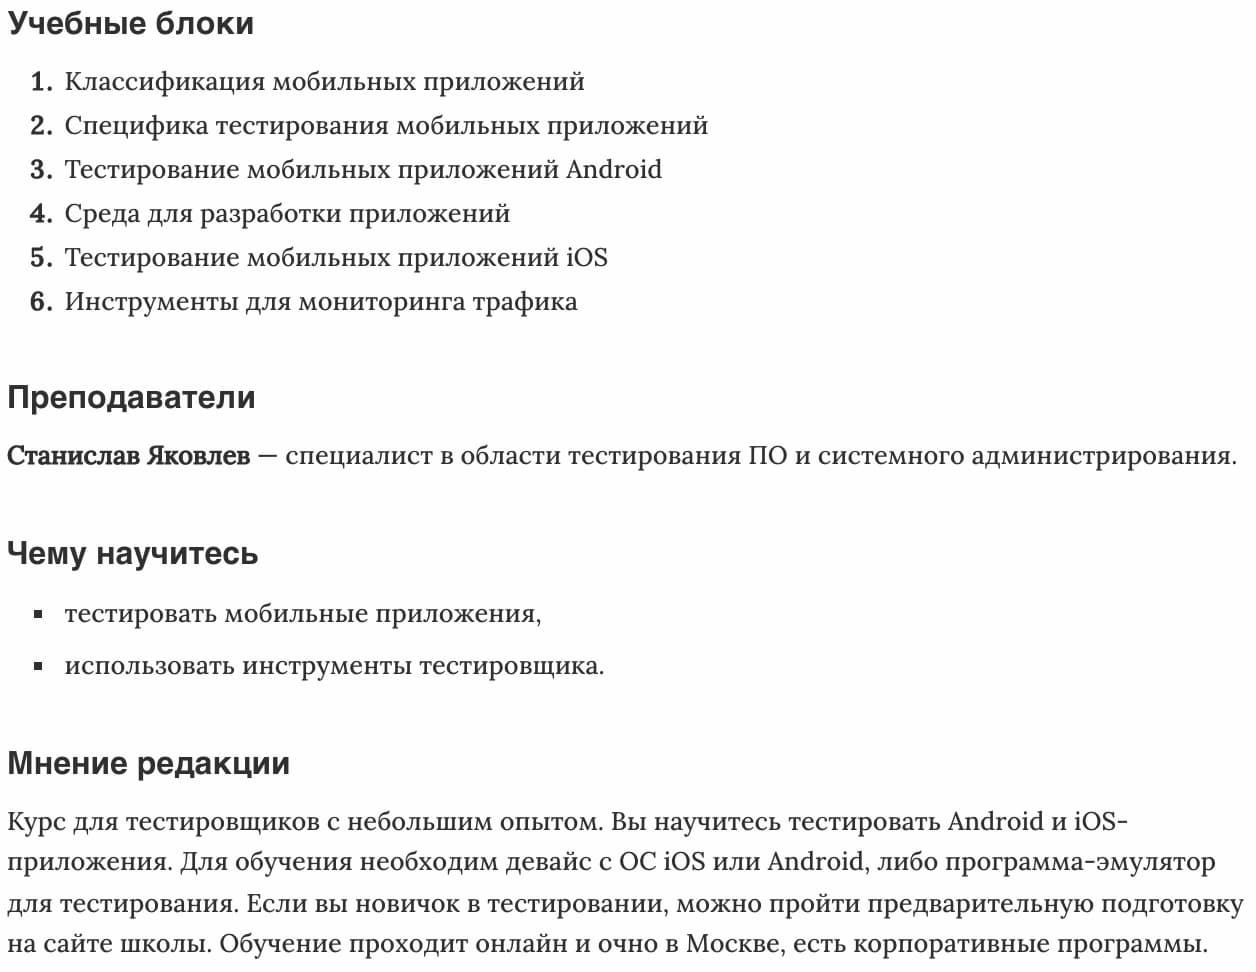 Мнение редакции «Тестирование мобильных приложений» от Специалист.ru